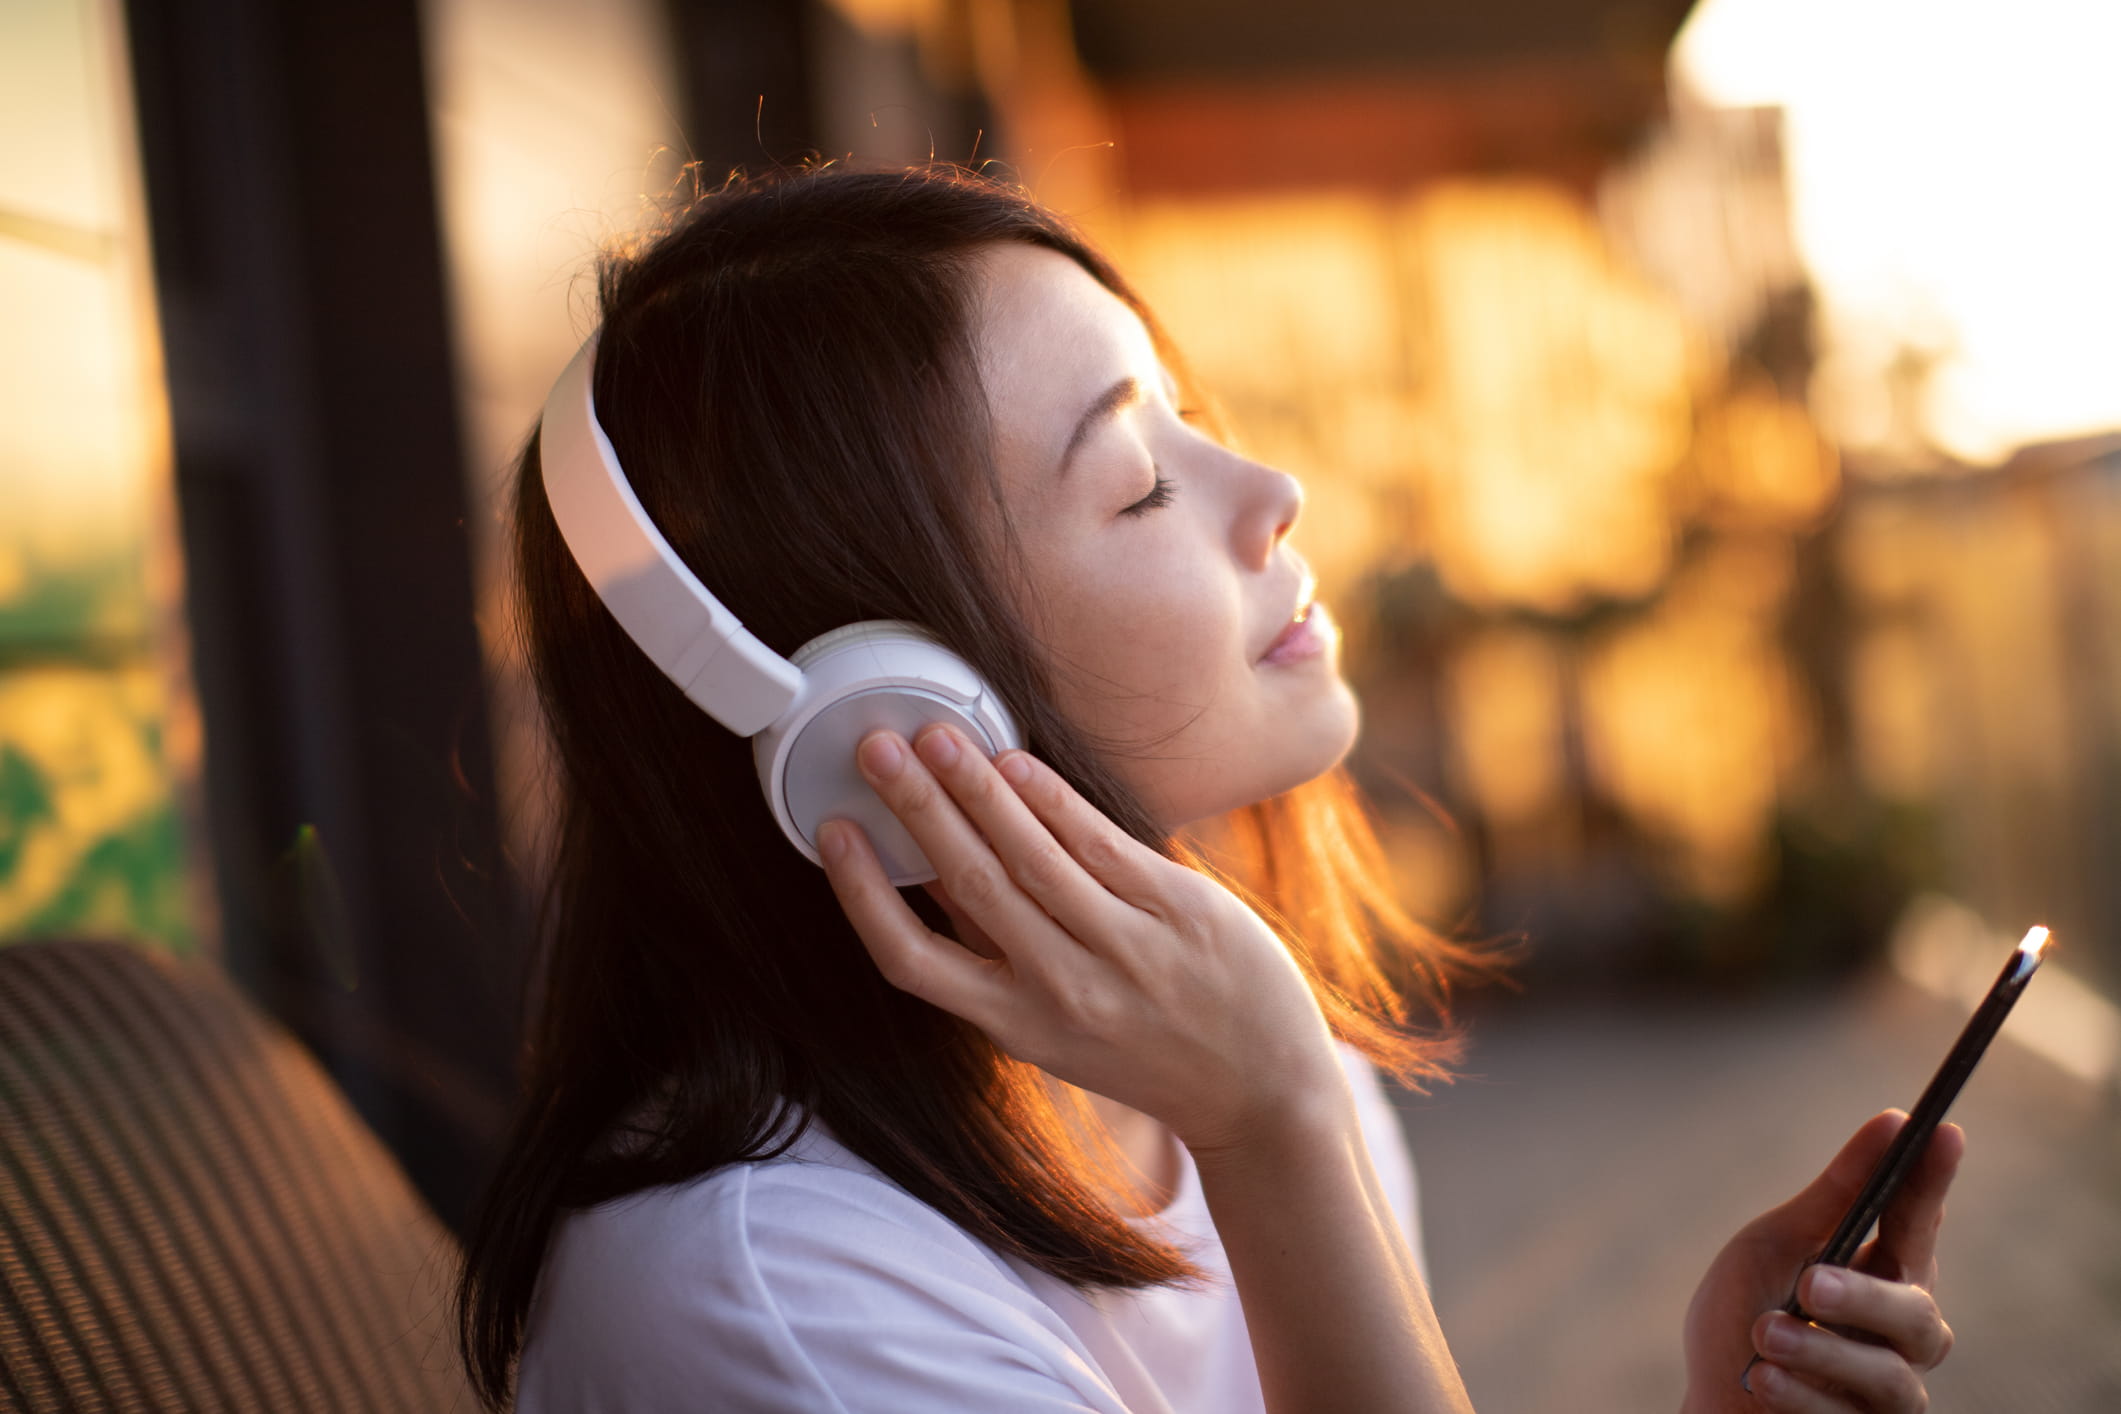 Sonido encendido, distracciones apagadas: cómo usar la música para concentrarse